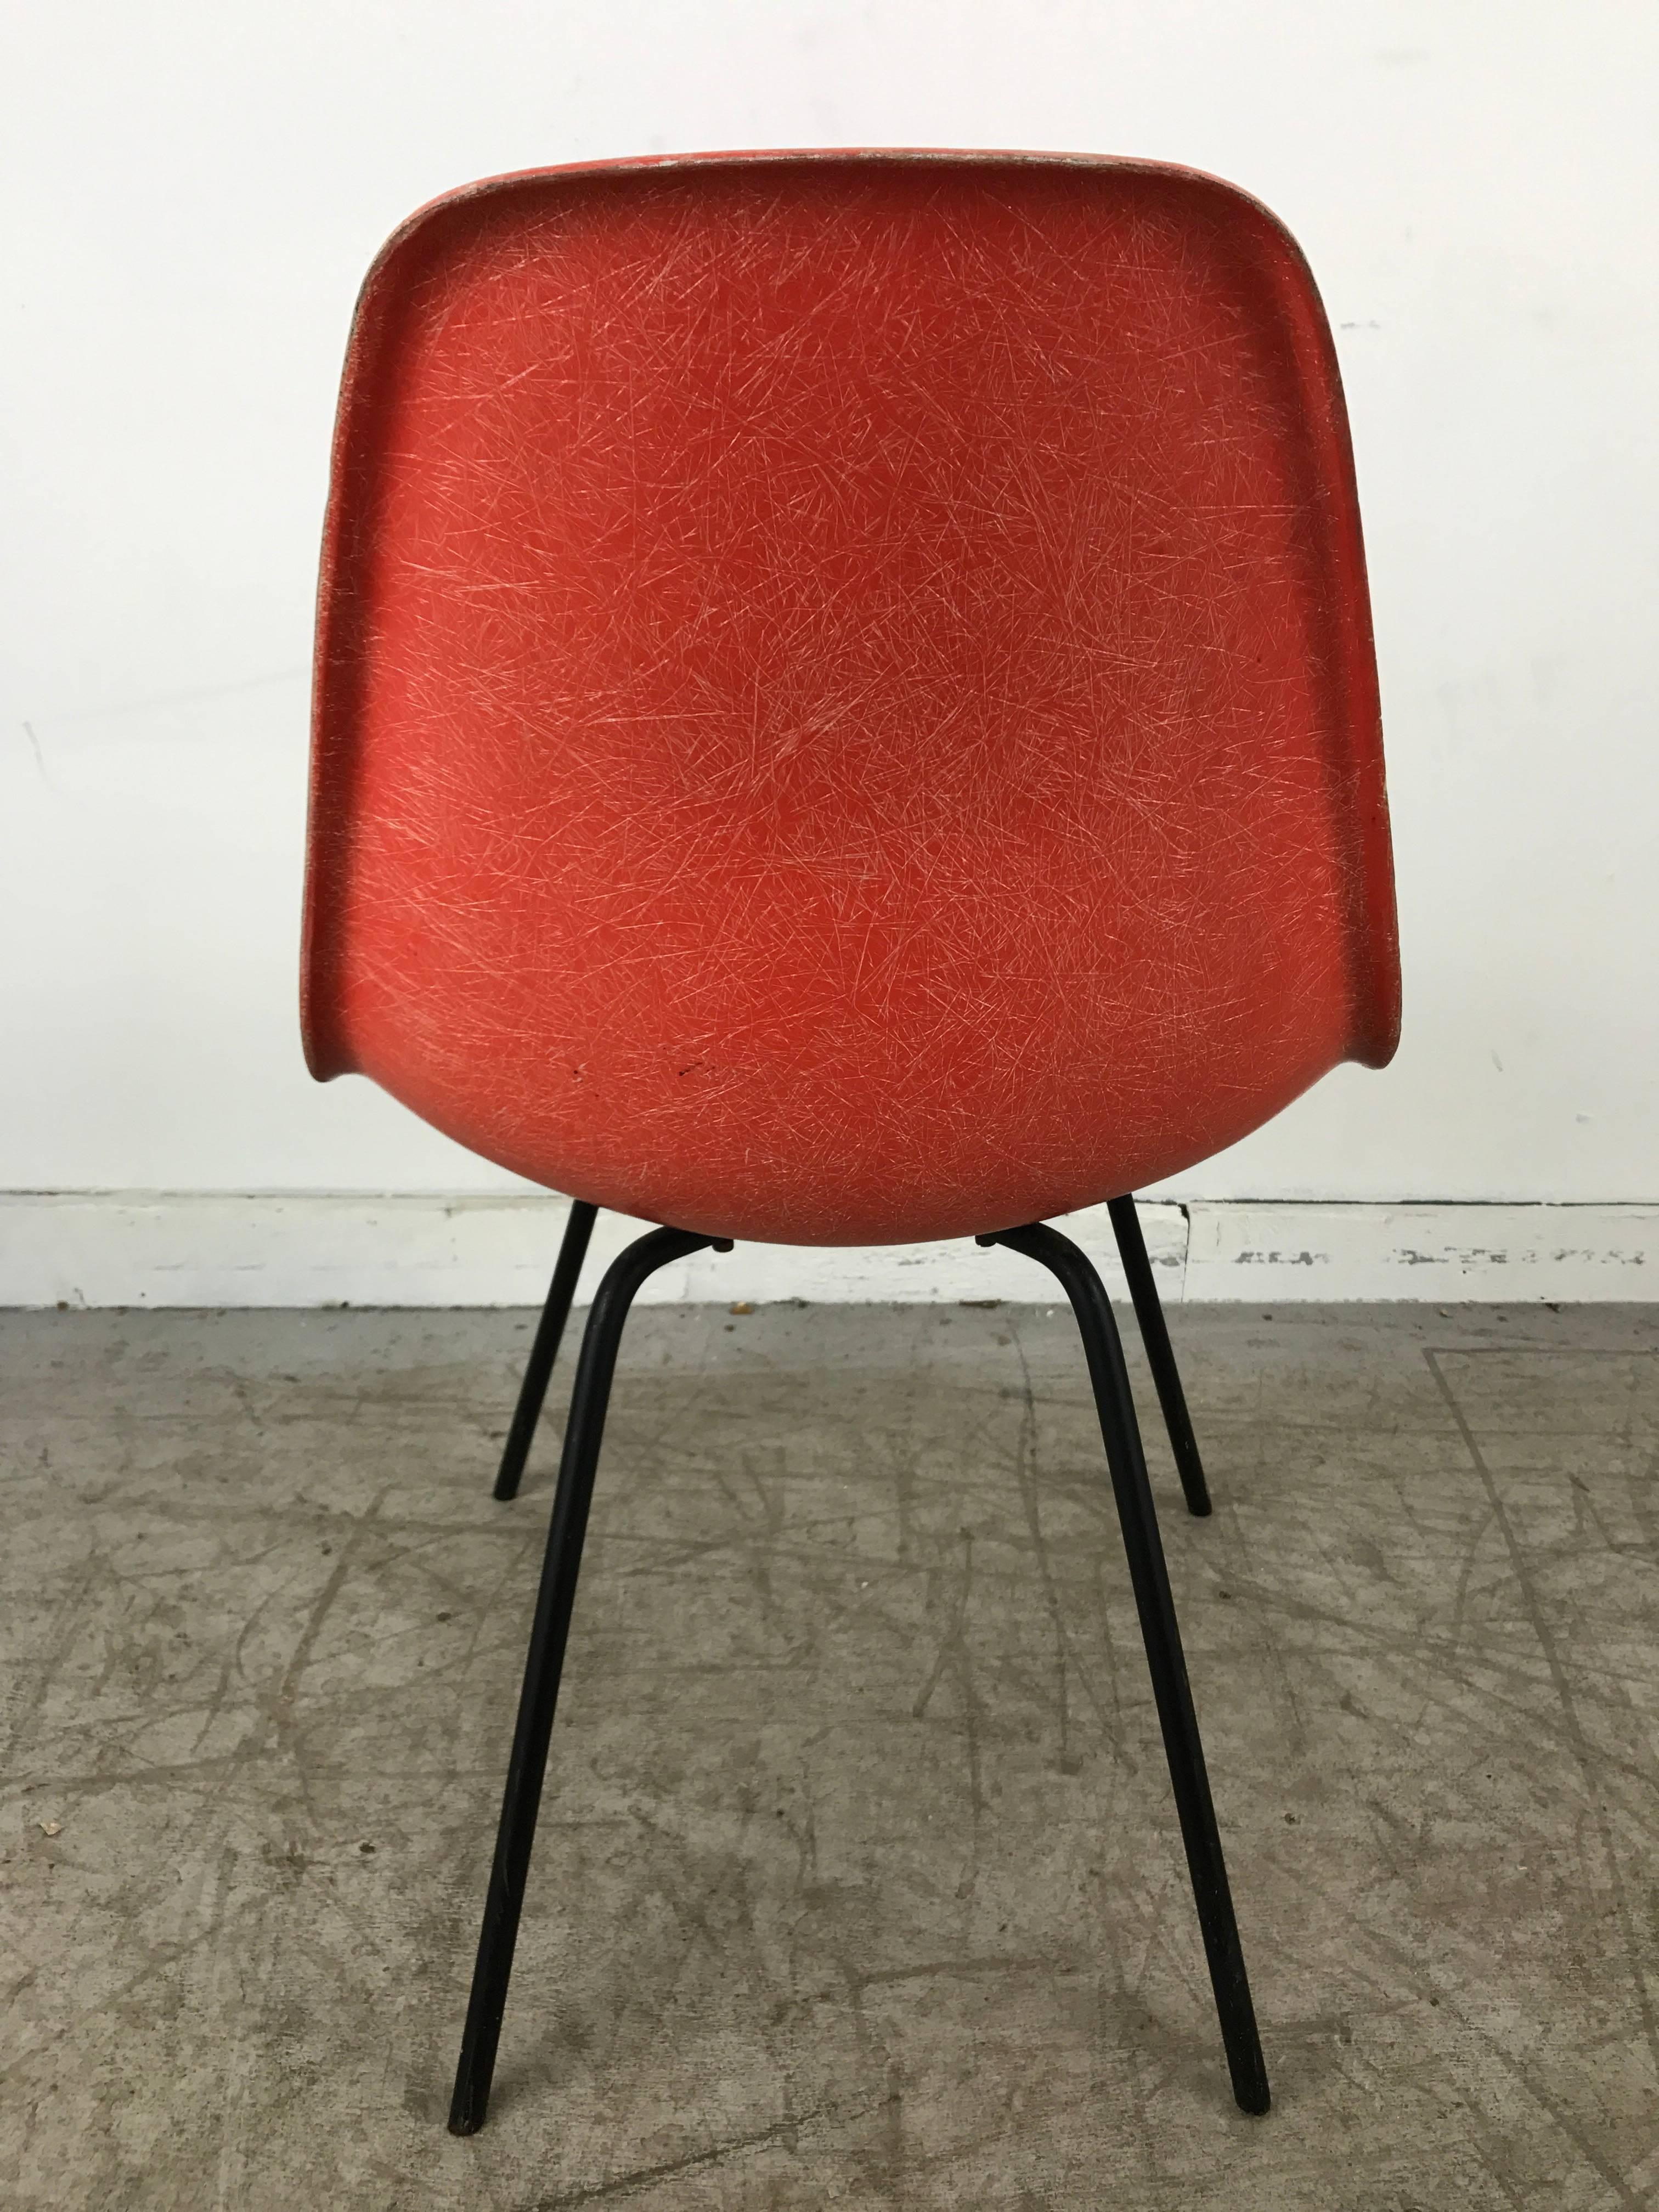 x base chair